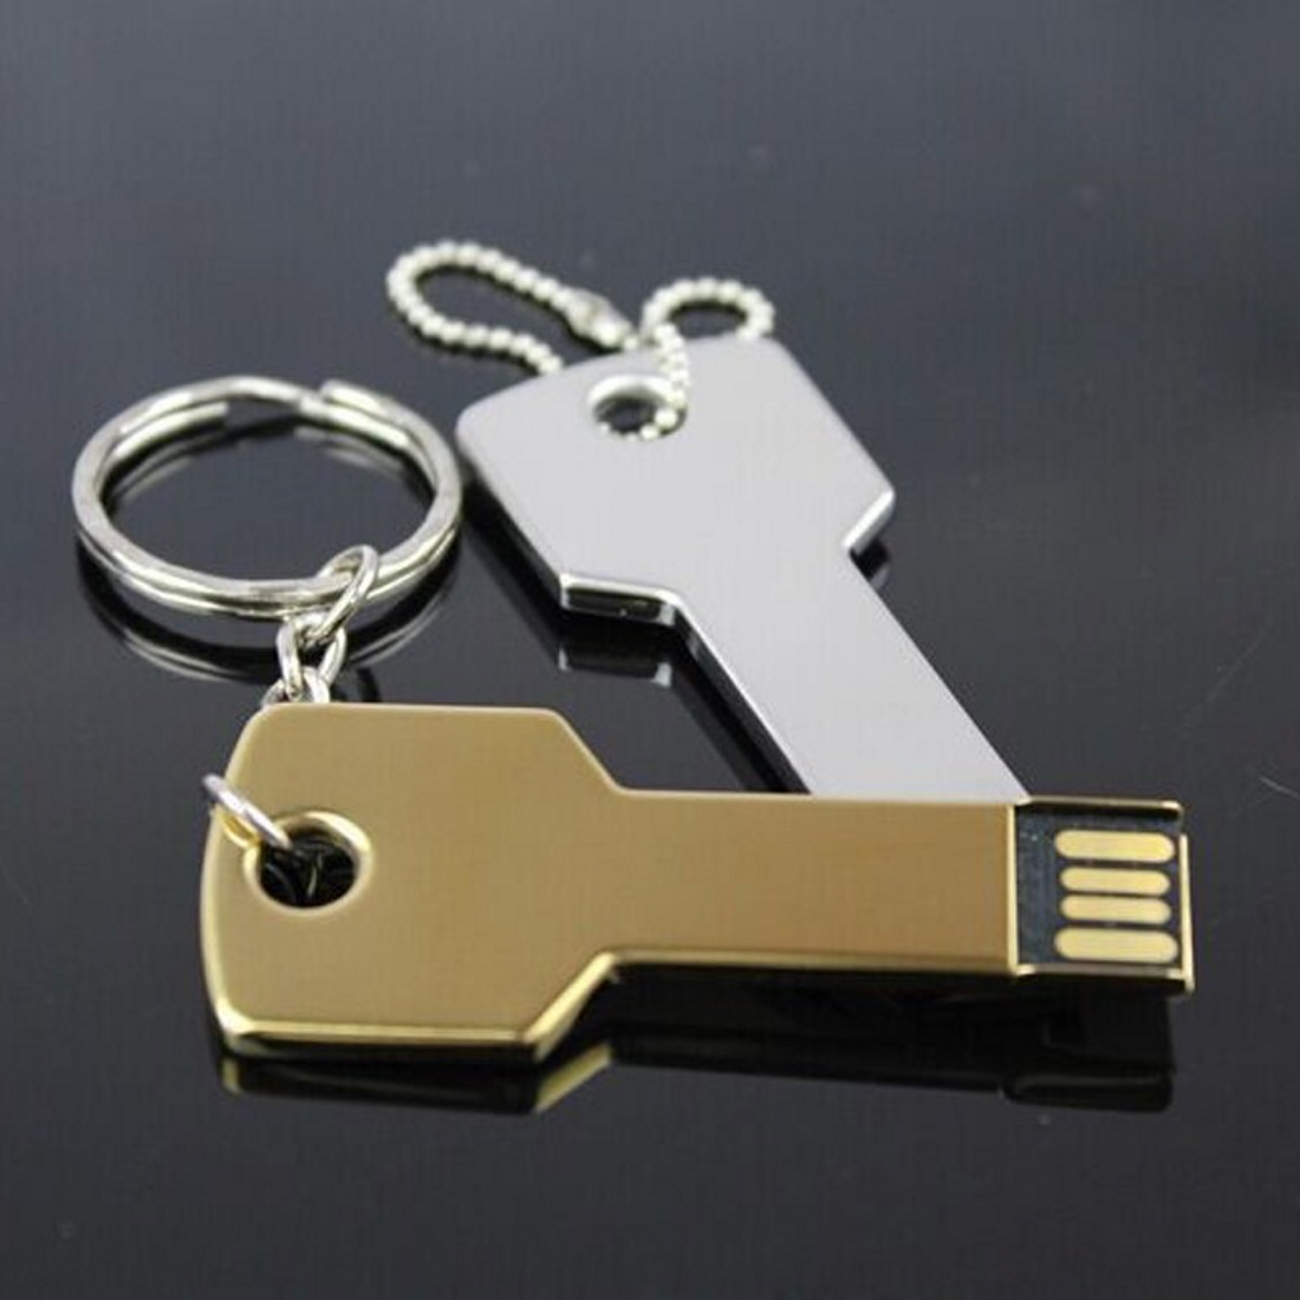 Key Gold GB) 2 USB-Stick USB (Gold, 2GB GERMANY